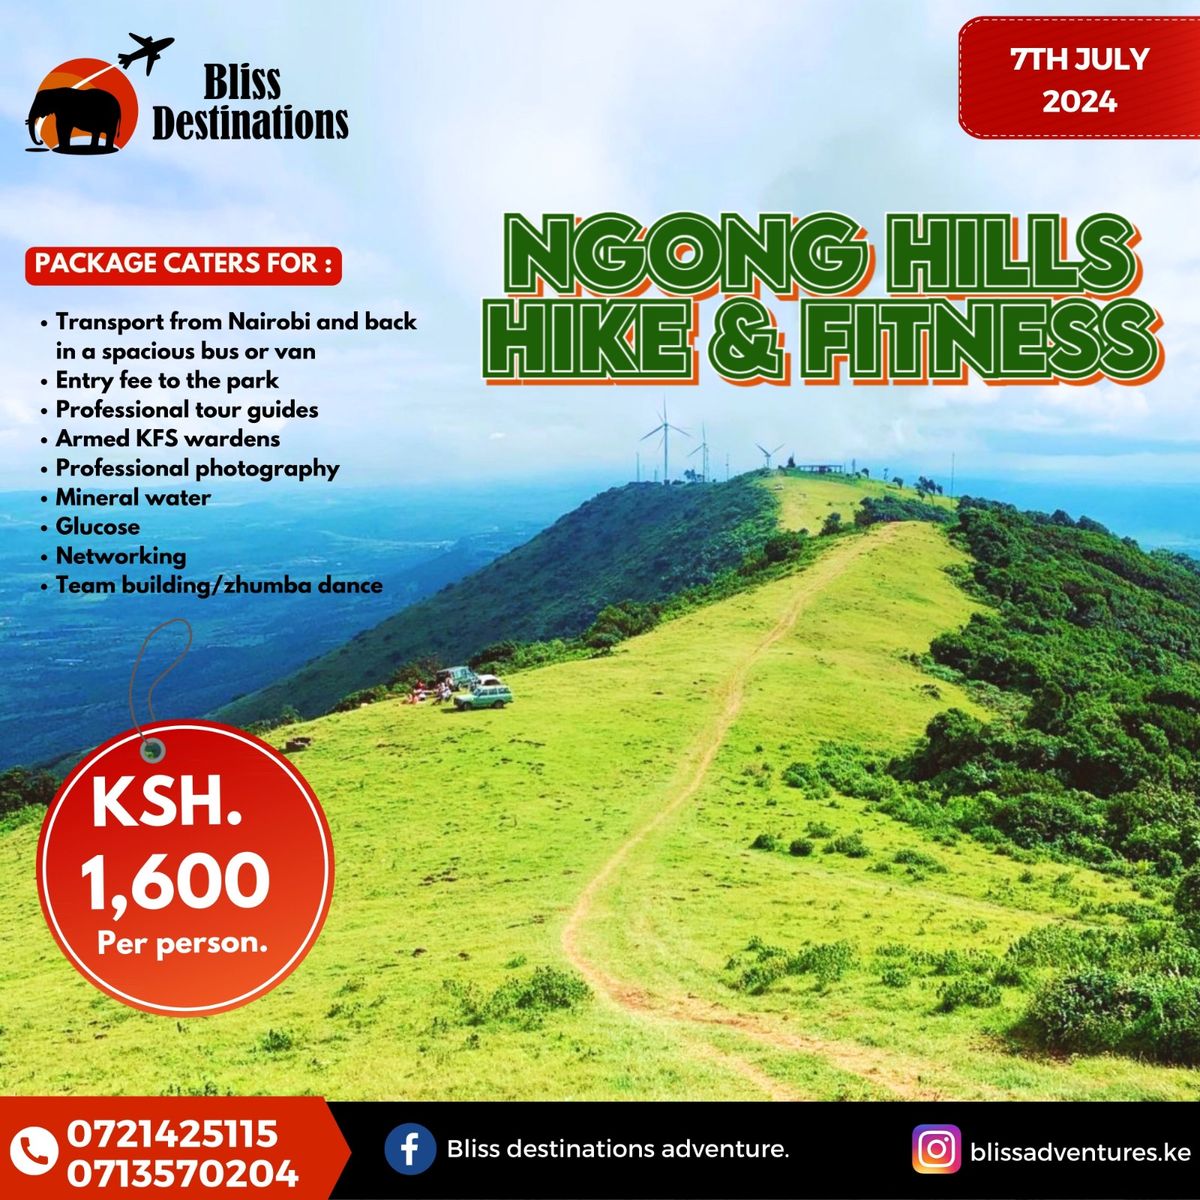 NGONG HILLS Hike & Fitness